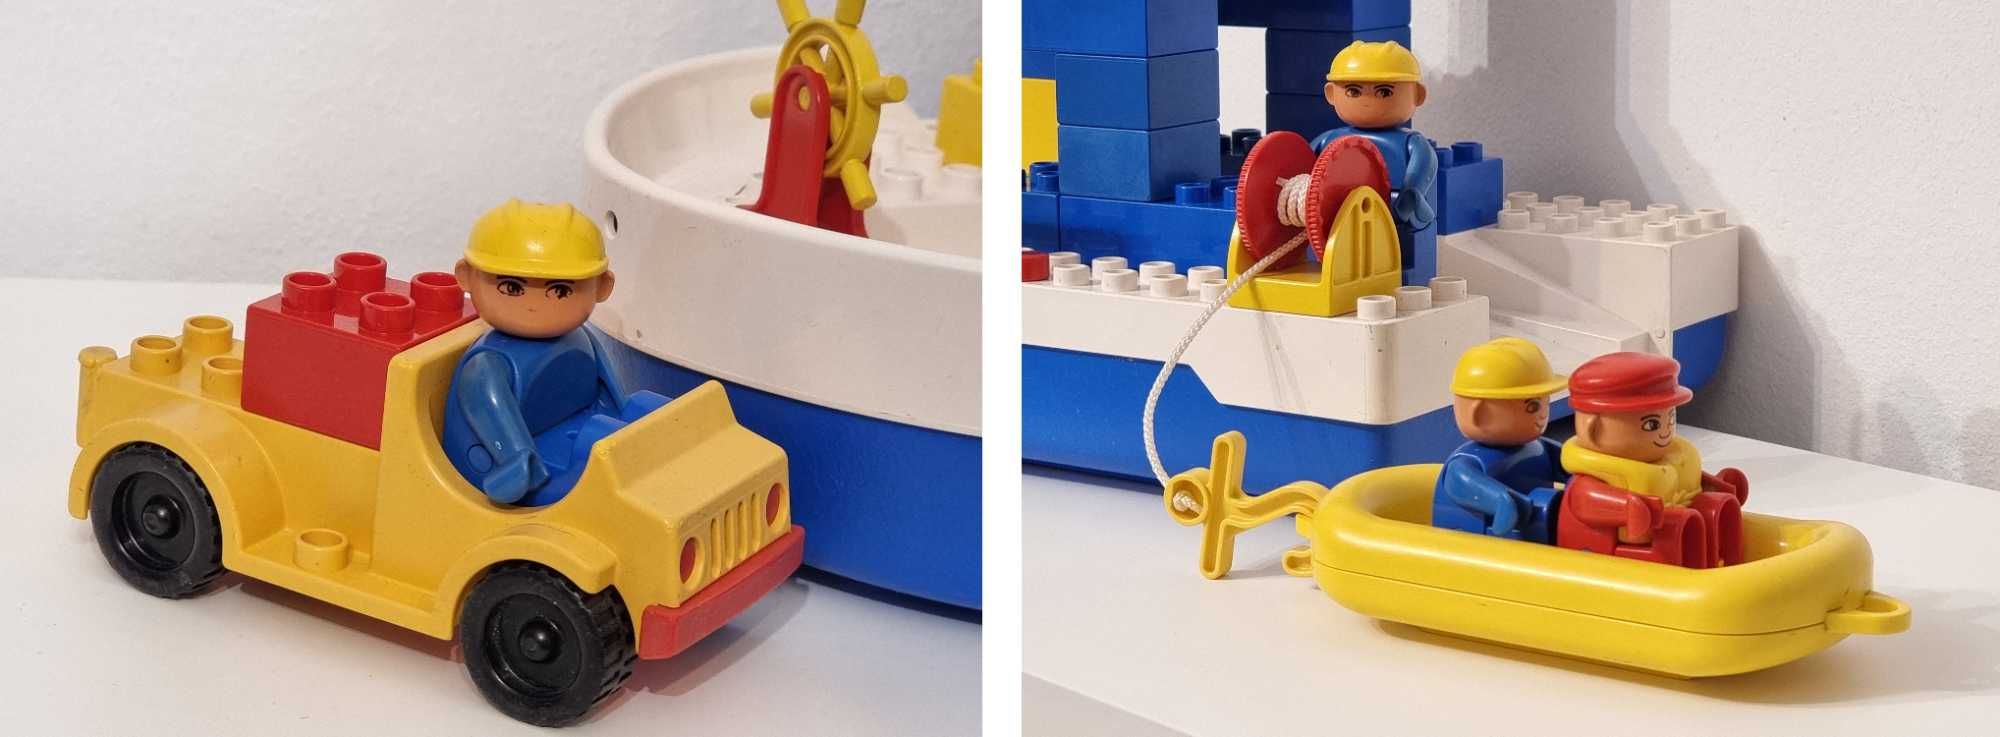 Vapor Bac Lego Duplo 2649 Sea Explorer